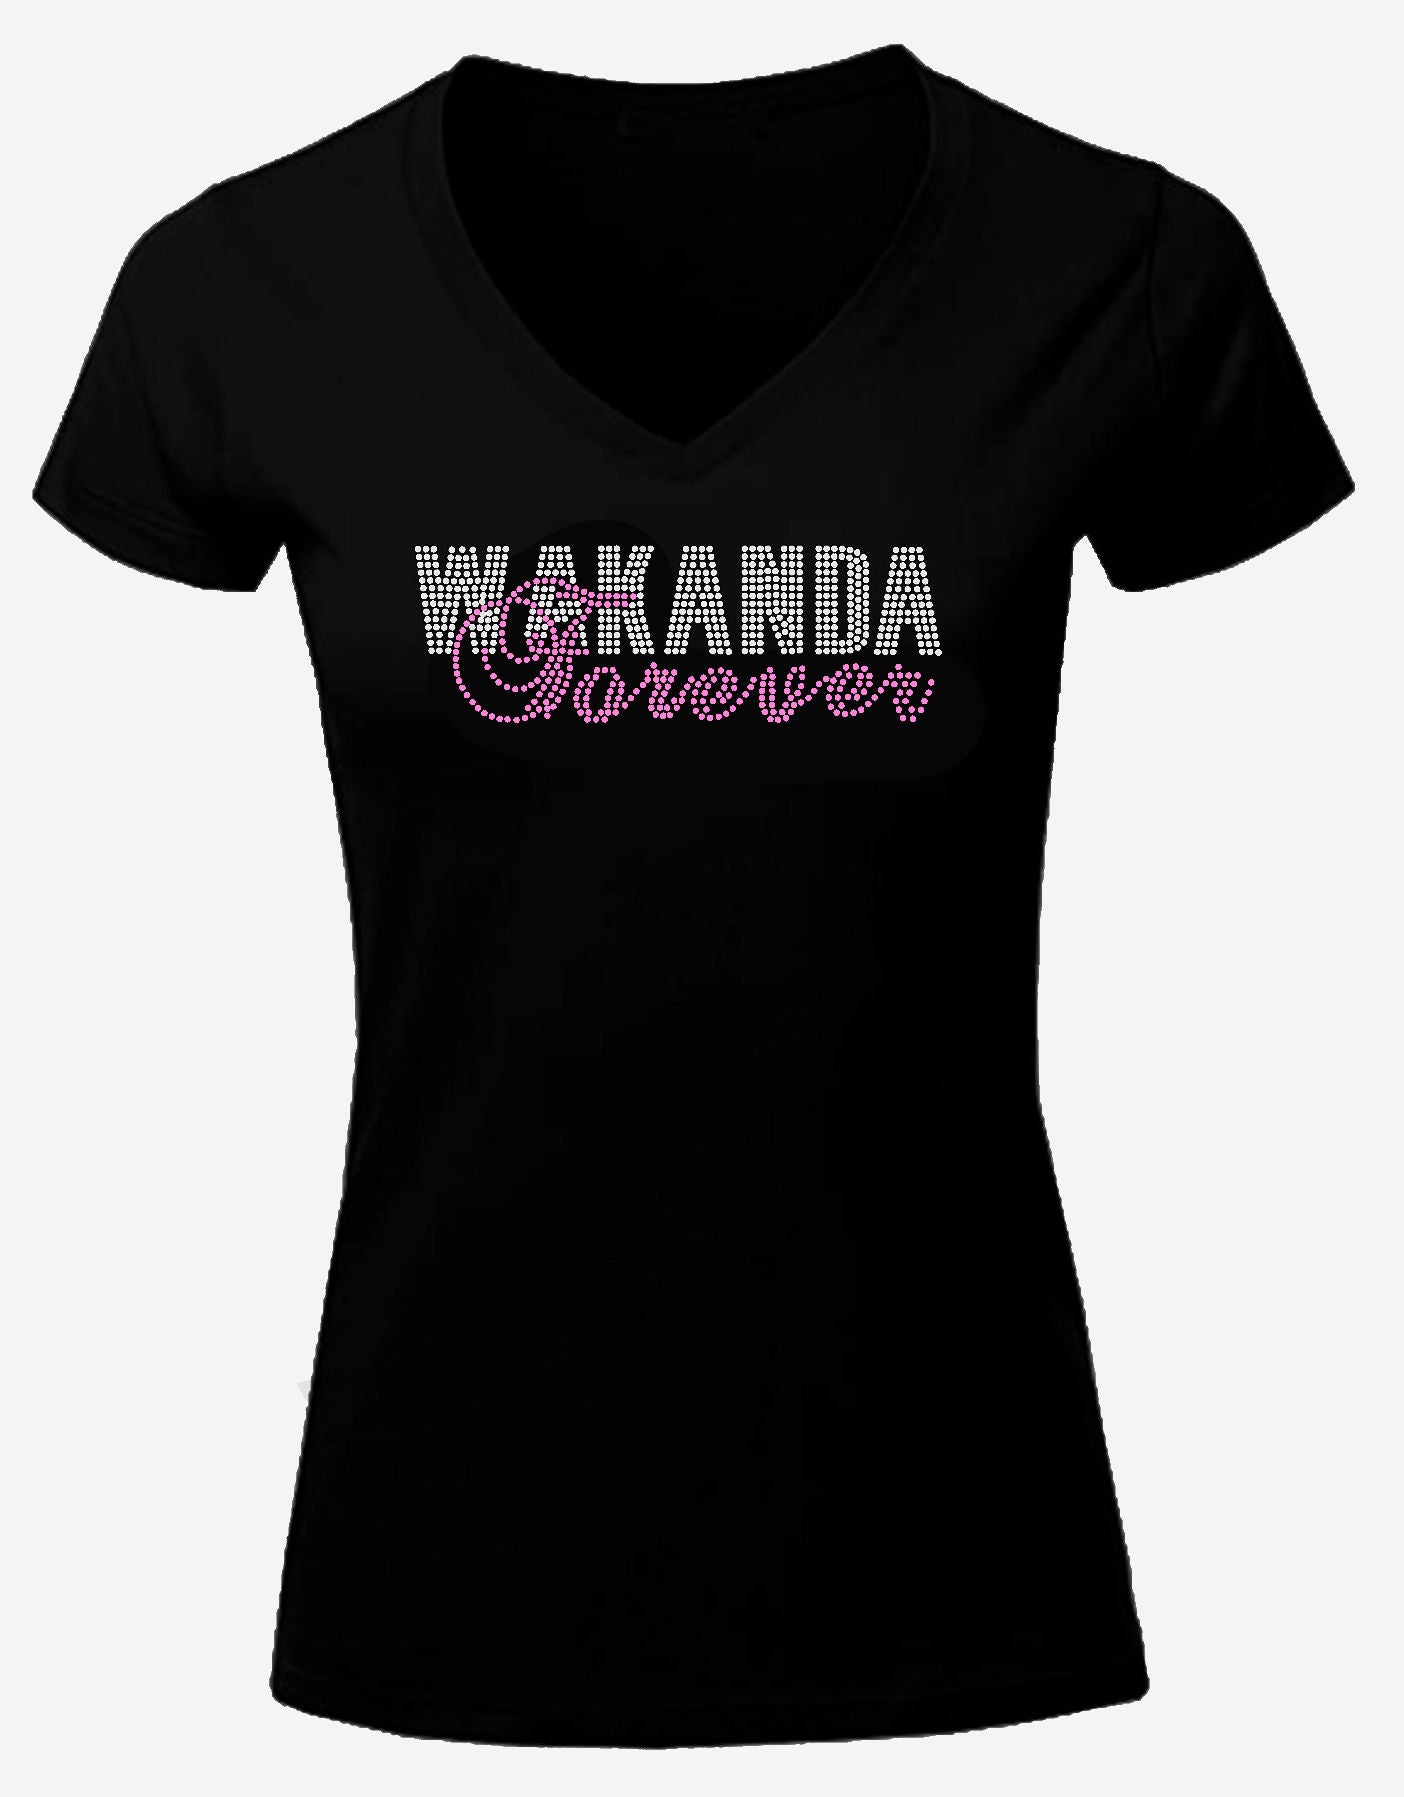 Wakanda Forever Rhinestone T Shirt